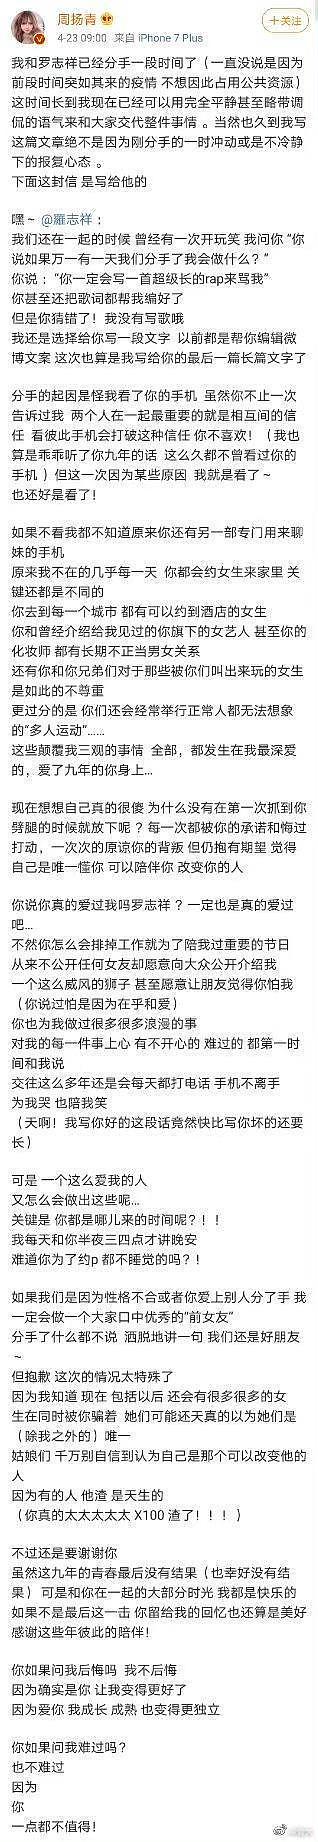 罗志祥现身北京机场疑似复出 曾透露正在录制综艺 - 5